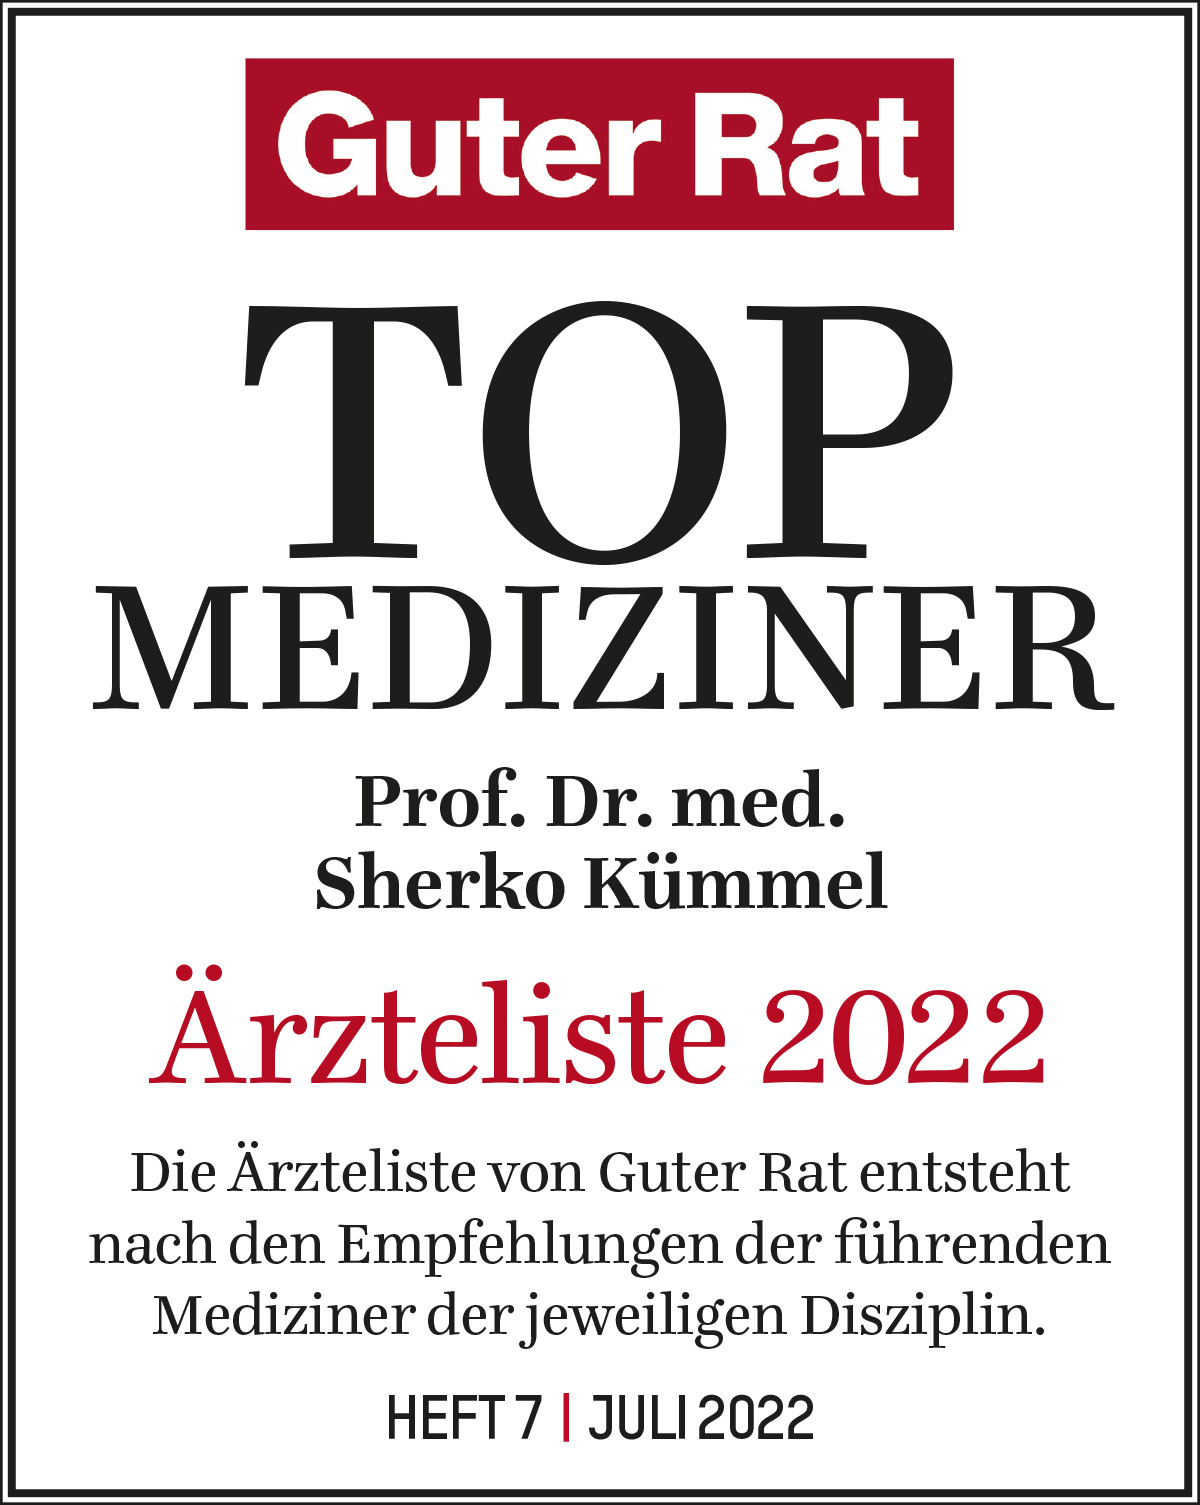 ärzteliste 2022 – Prof. Dr. Kümmel